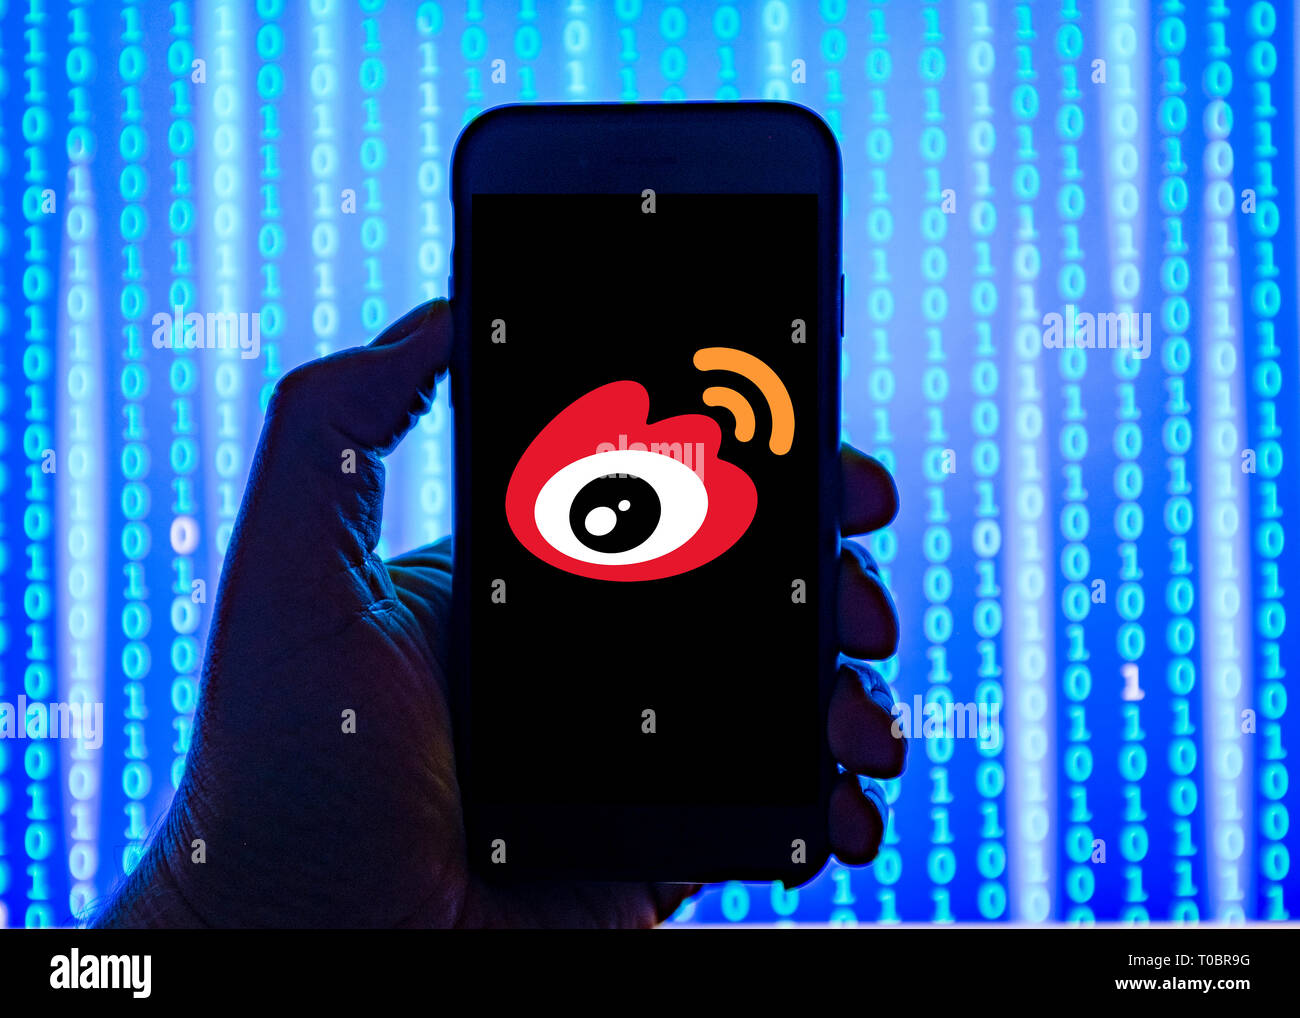 Persona sosteniendo el teléfono inteligente con el chino Weibo Logotipo mostrado en la pantalla. Sina Weibo es un sitio Web de microblogging chino y uno de los mayores soc Foto de stock